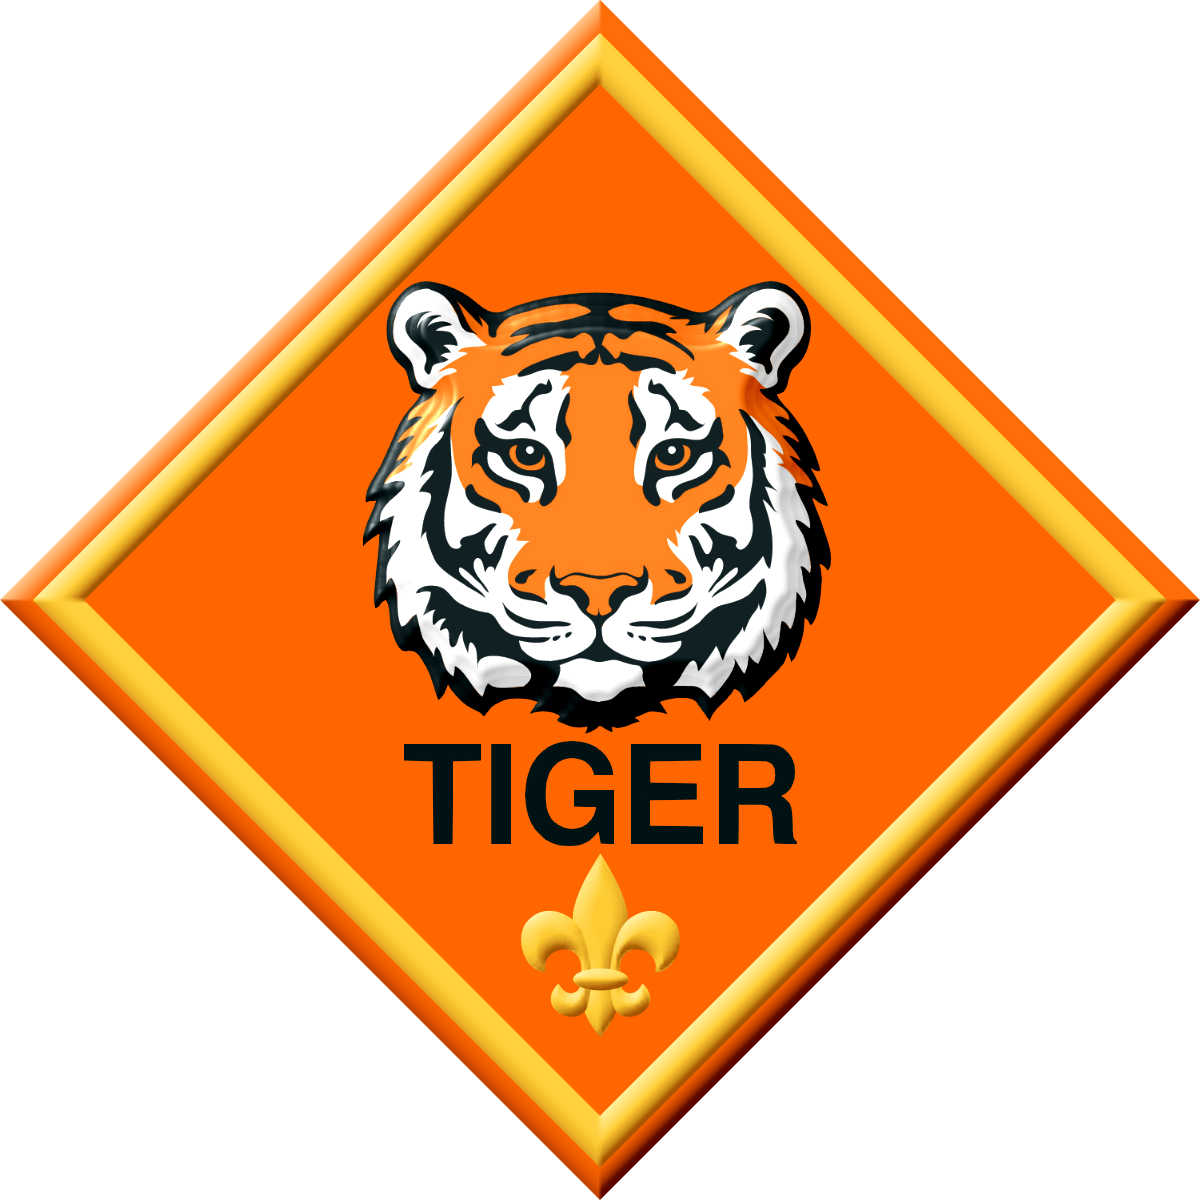 Tiger Den Cub Scouts (1200x1200)